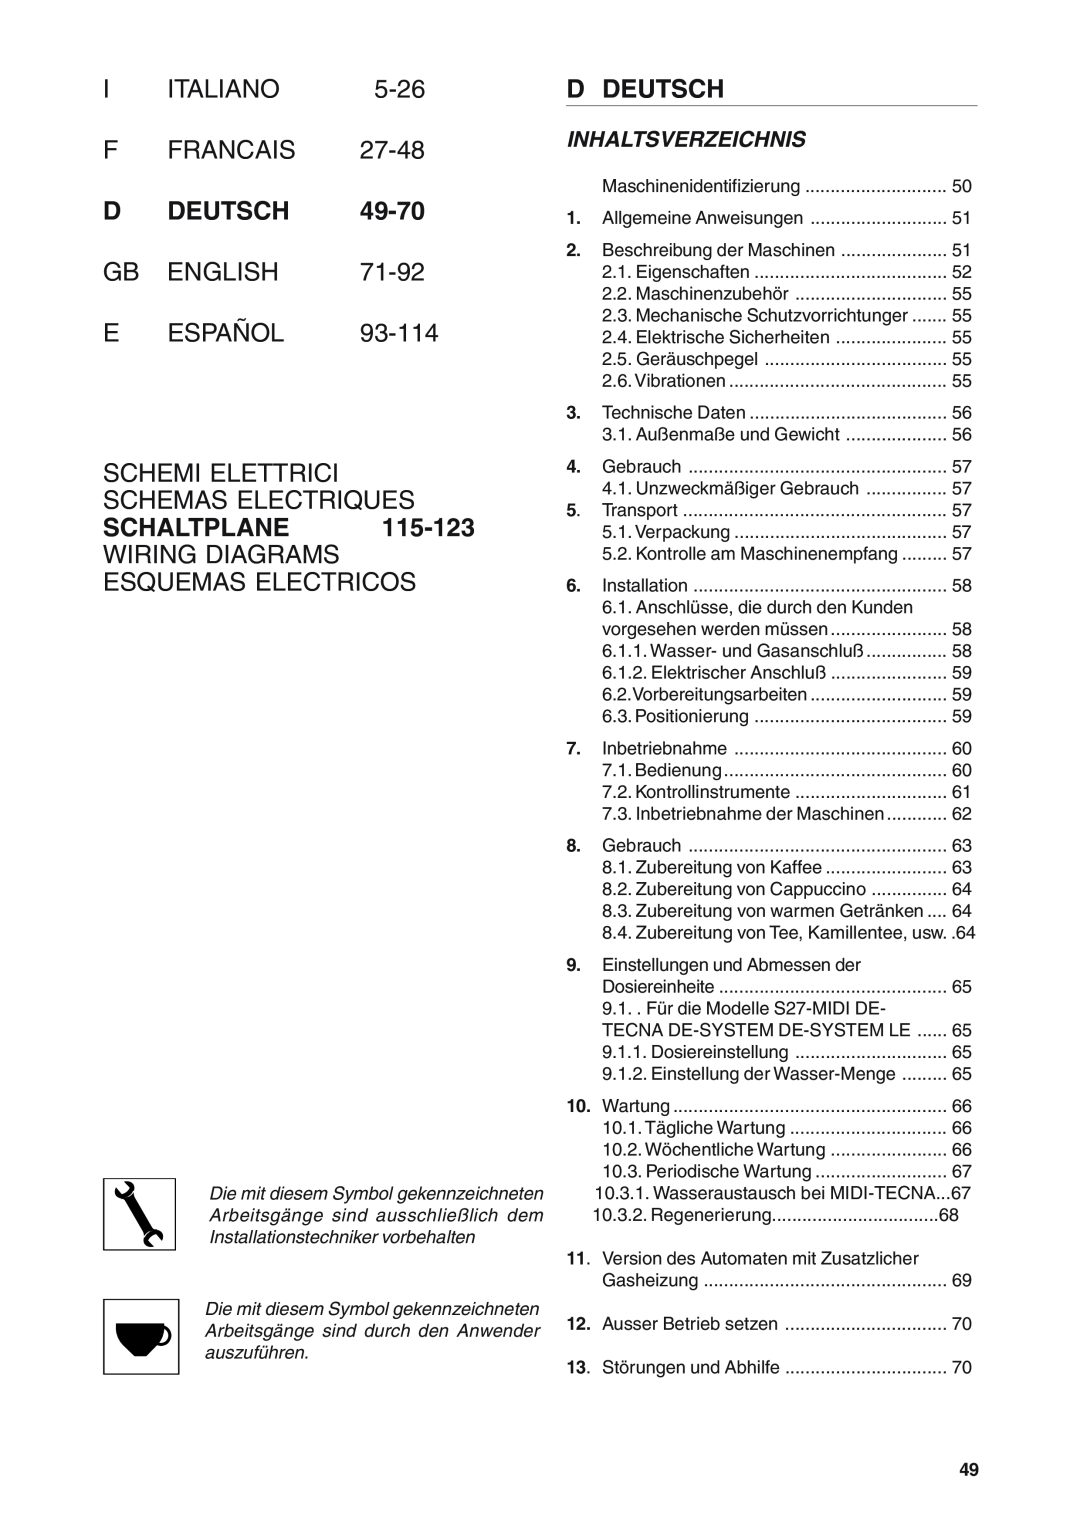 Rancilio S20 F Francais, D Deutsch, E Español Schemi Elettrici Schemas Electriques, Schaltplane, Inhaltsverzeichnis, 5-26 